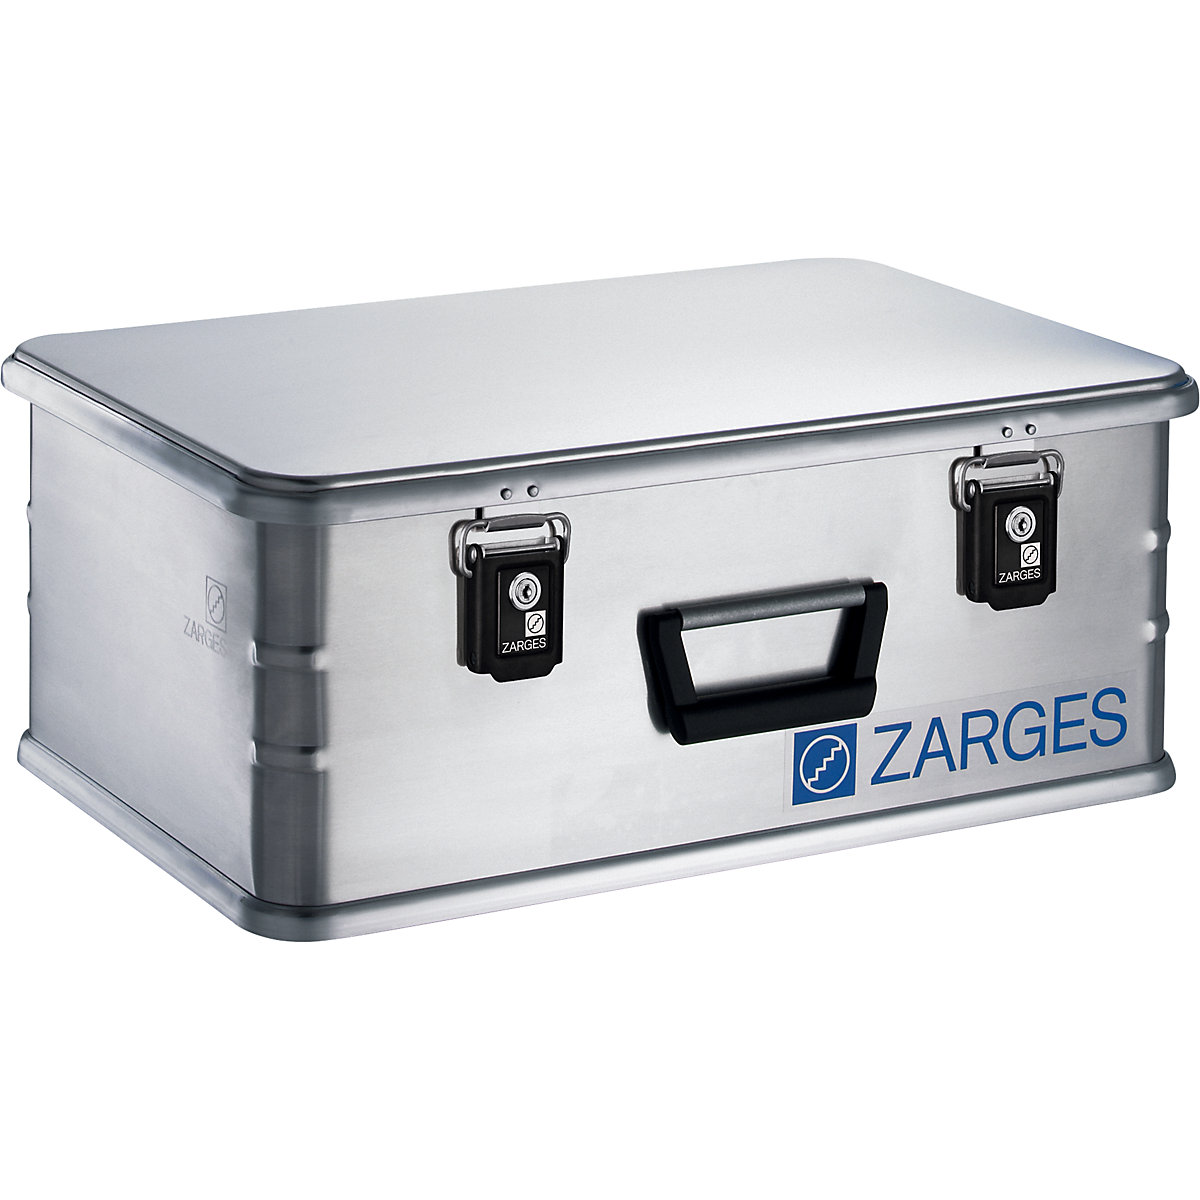 Aluminium combi-box – ZARGES